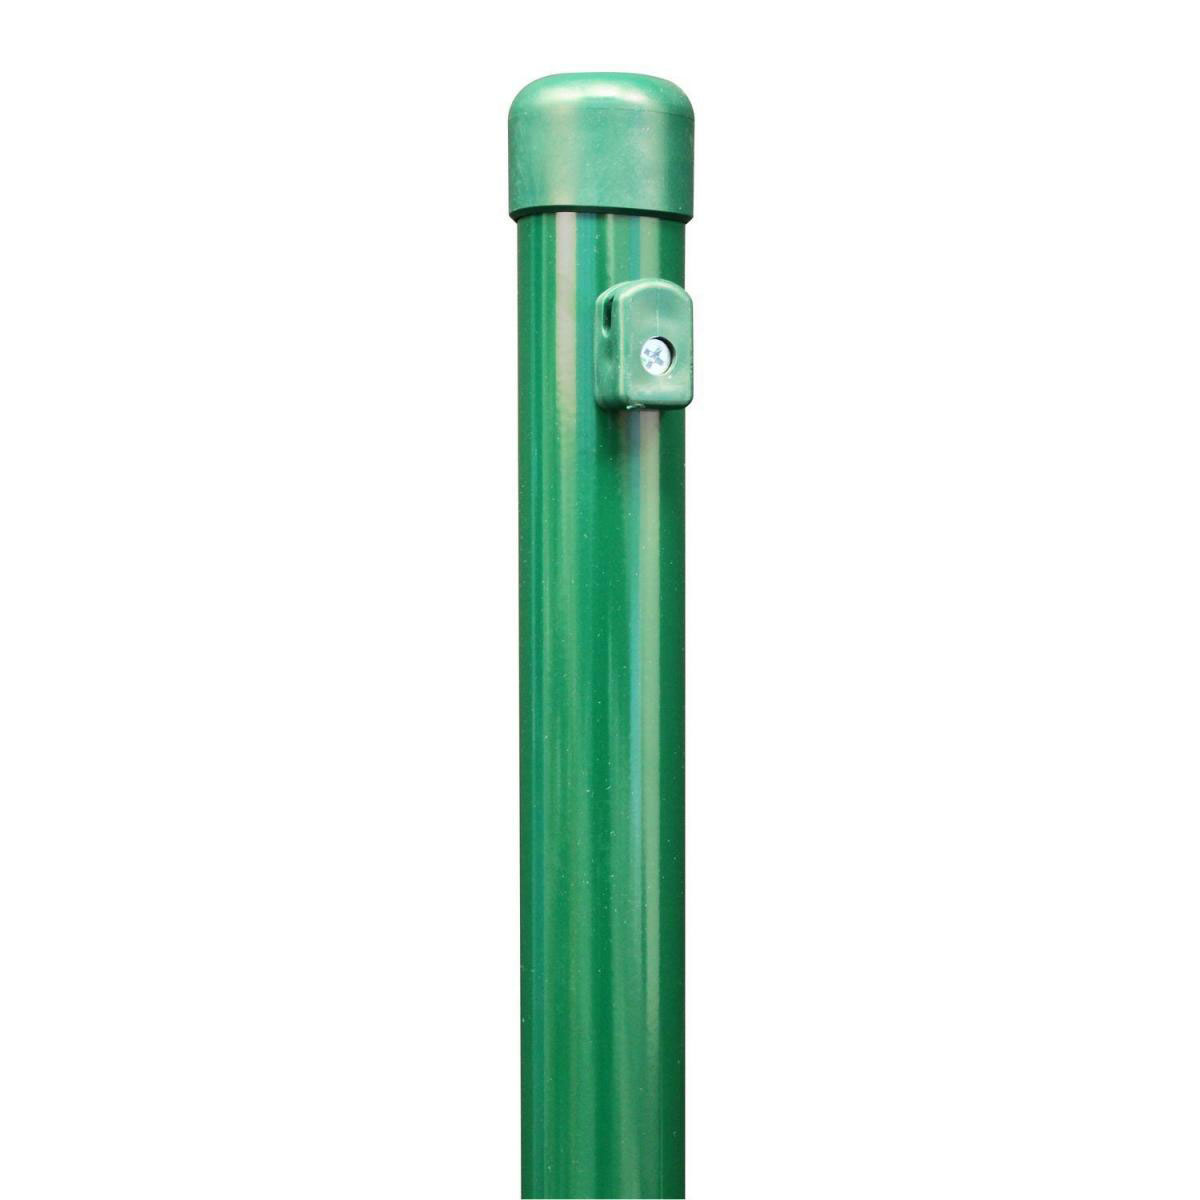 Zaunpfosten grün, Durchmesser 40 mm/2000/150